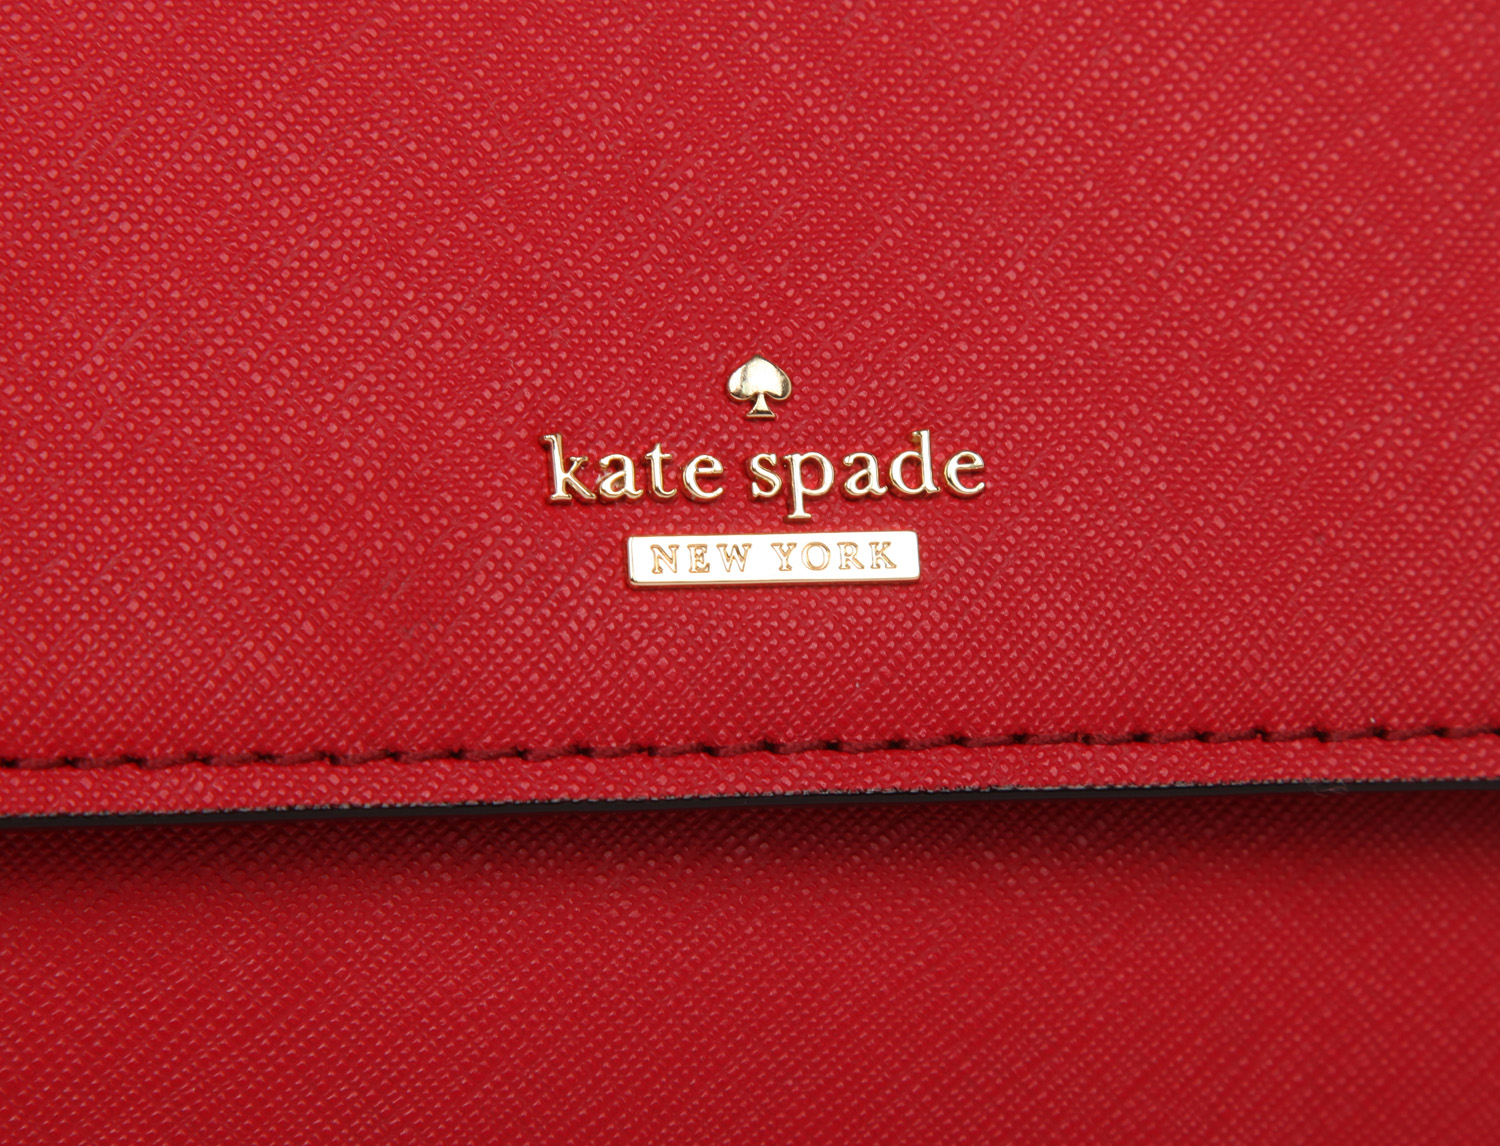 Kate Spade Cameron Street Small Byrdie Ladies Small Beige Leather Tote Bag  PXRU8271-265